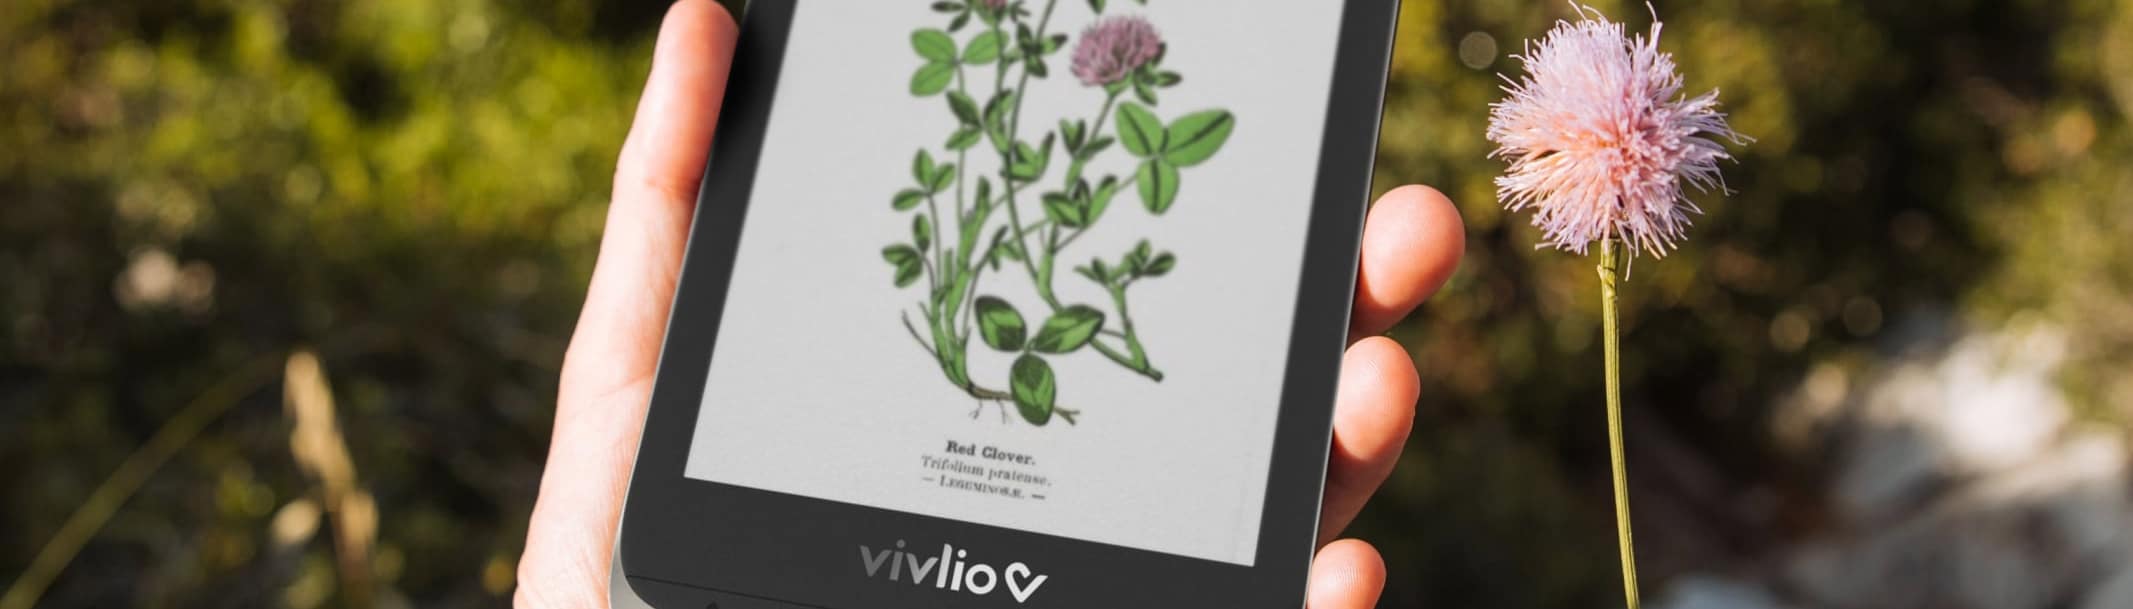 Vivlio Color – La liseuse couleur arrive en France en février ! - IDBOOX